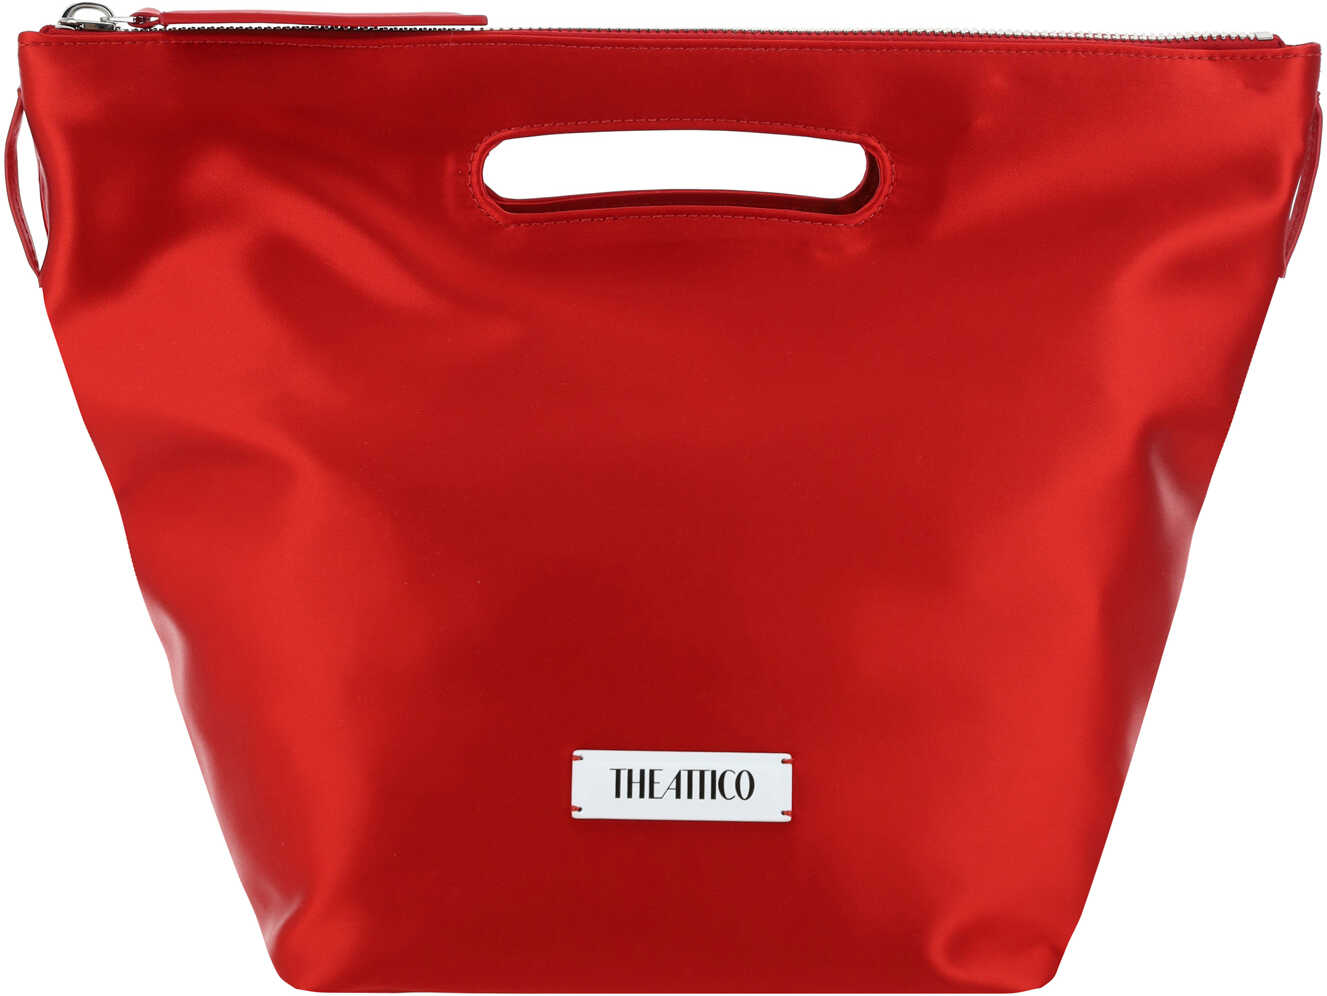 THE ATTICO Via Dei Giardini 30 Handbag Vibrant red